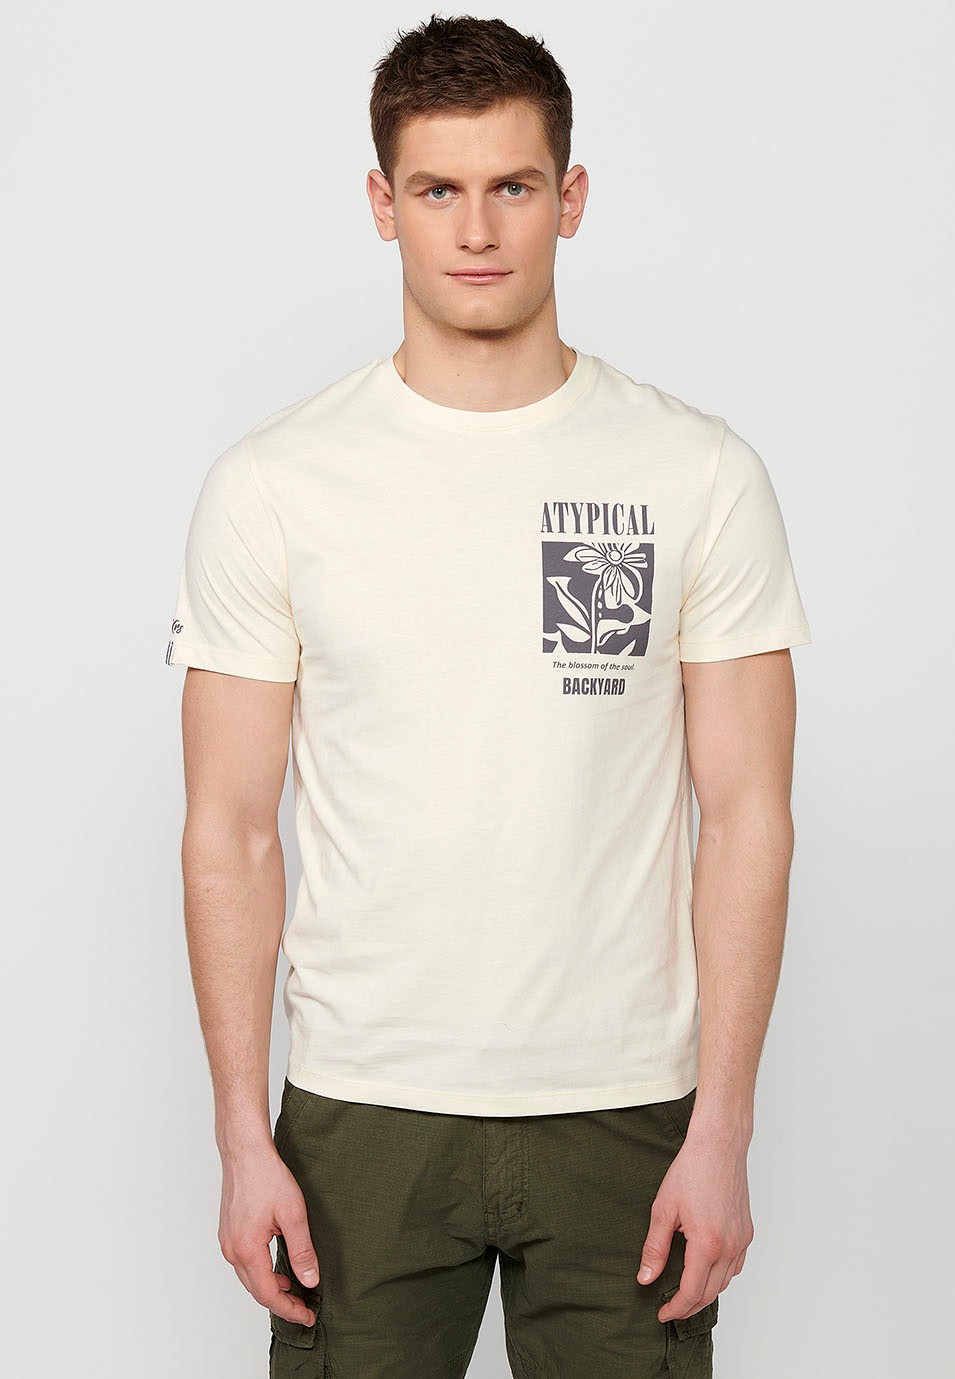 Cream Herren-T-Shirt aus Baumwolle mit kurzen Ärmeln, Rundhalsausschnitt und Rückenaufdruck